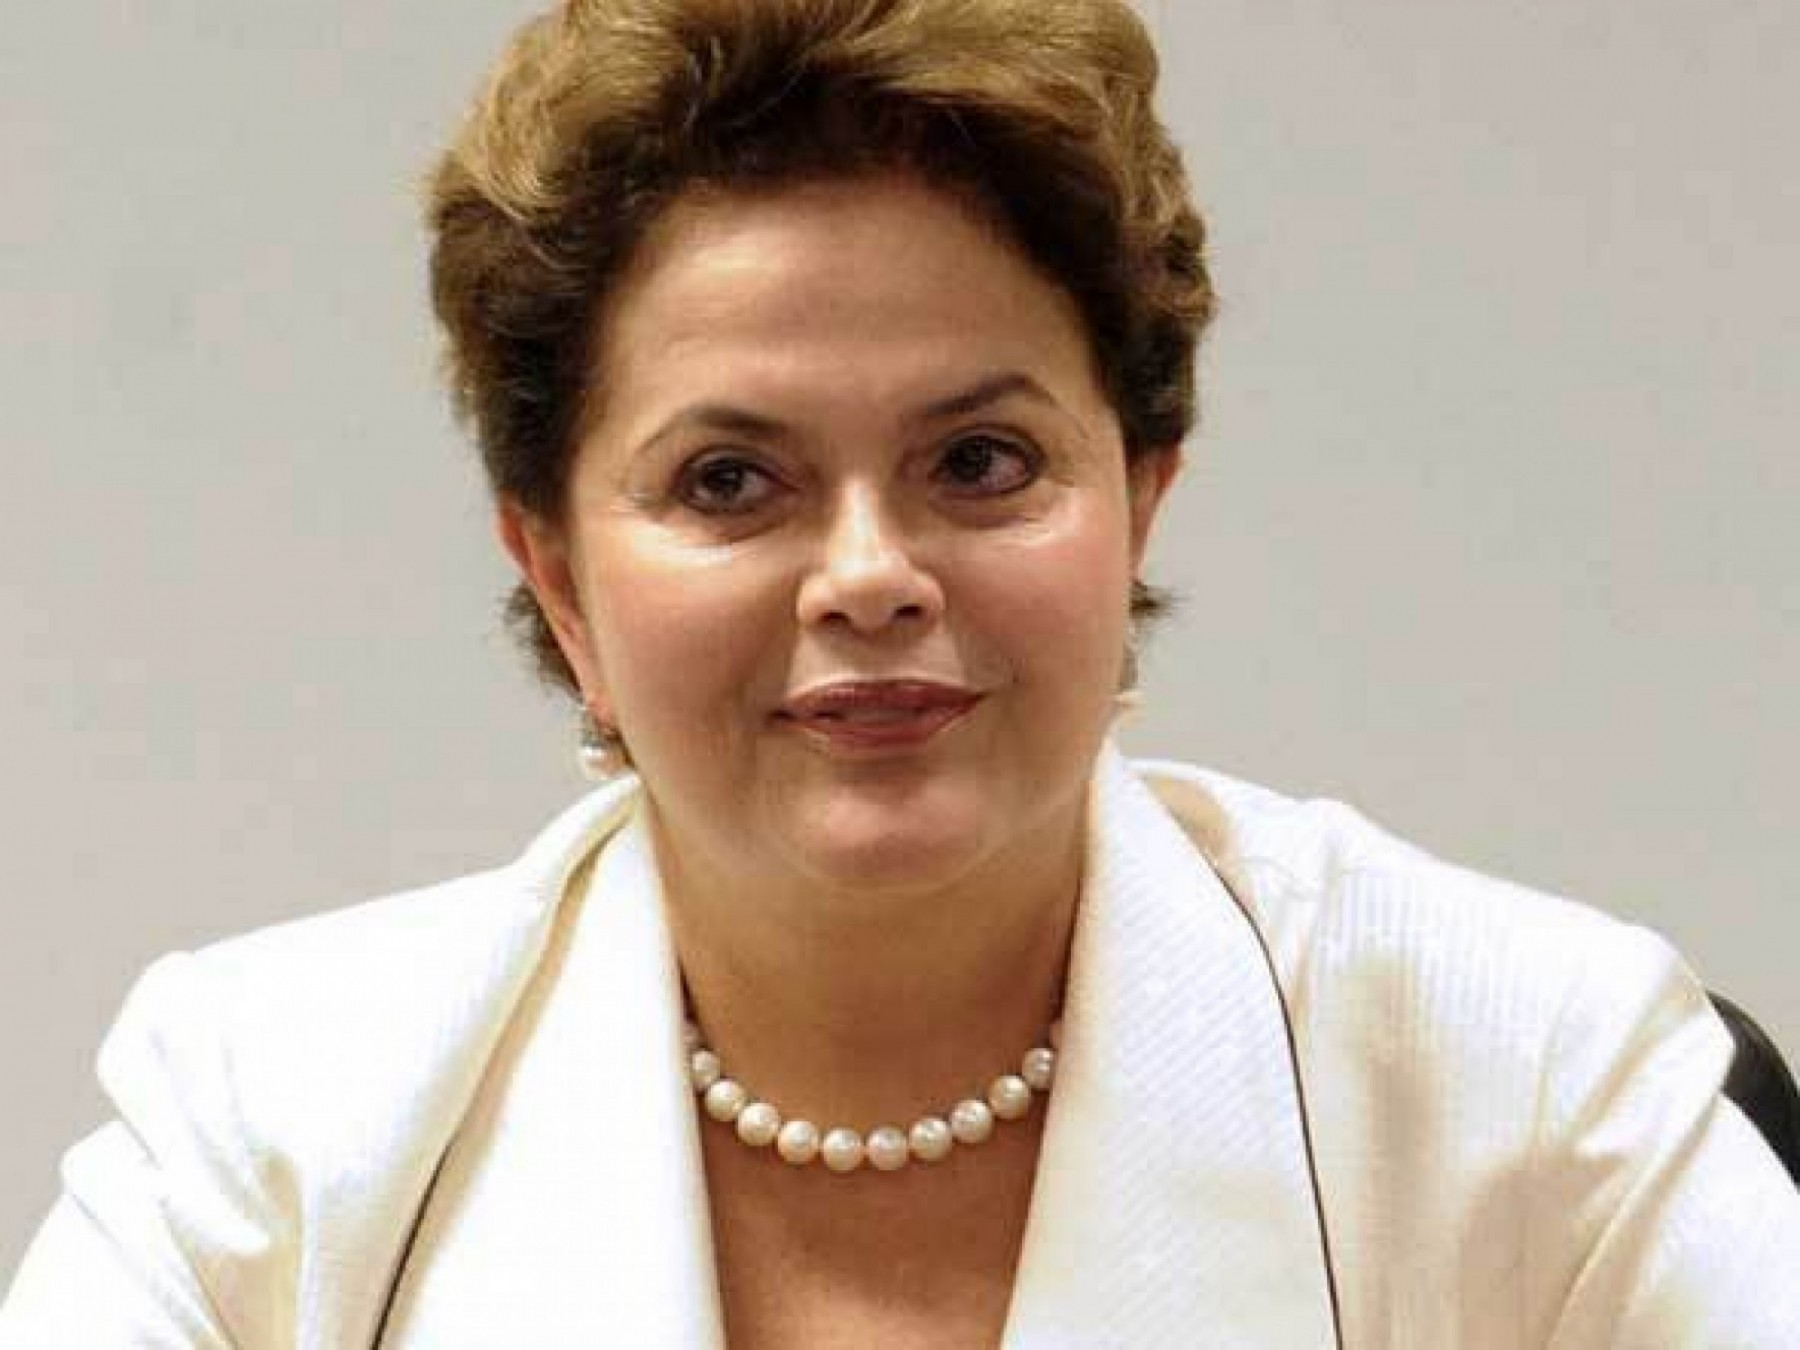 Dez anos de avanços - por Dilma Rousseff Os dez anos de governos liderados pelo Partido dos Trabalhadores marcam a incorporação de uma nova agenda para o Brasil.